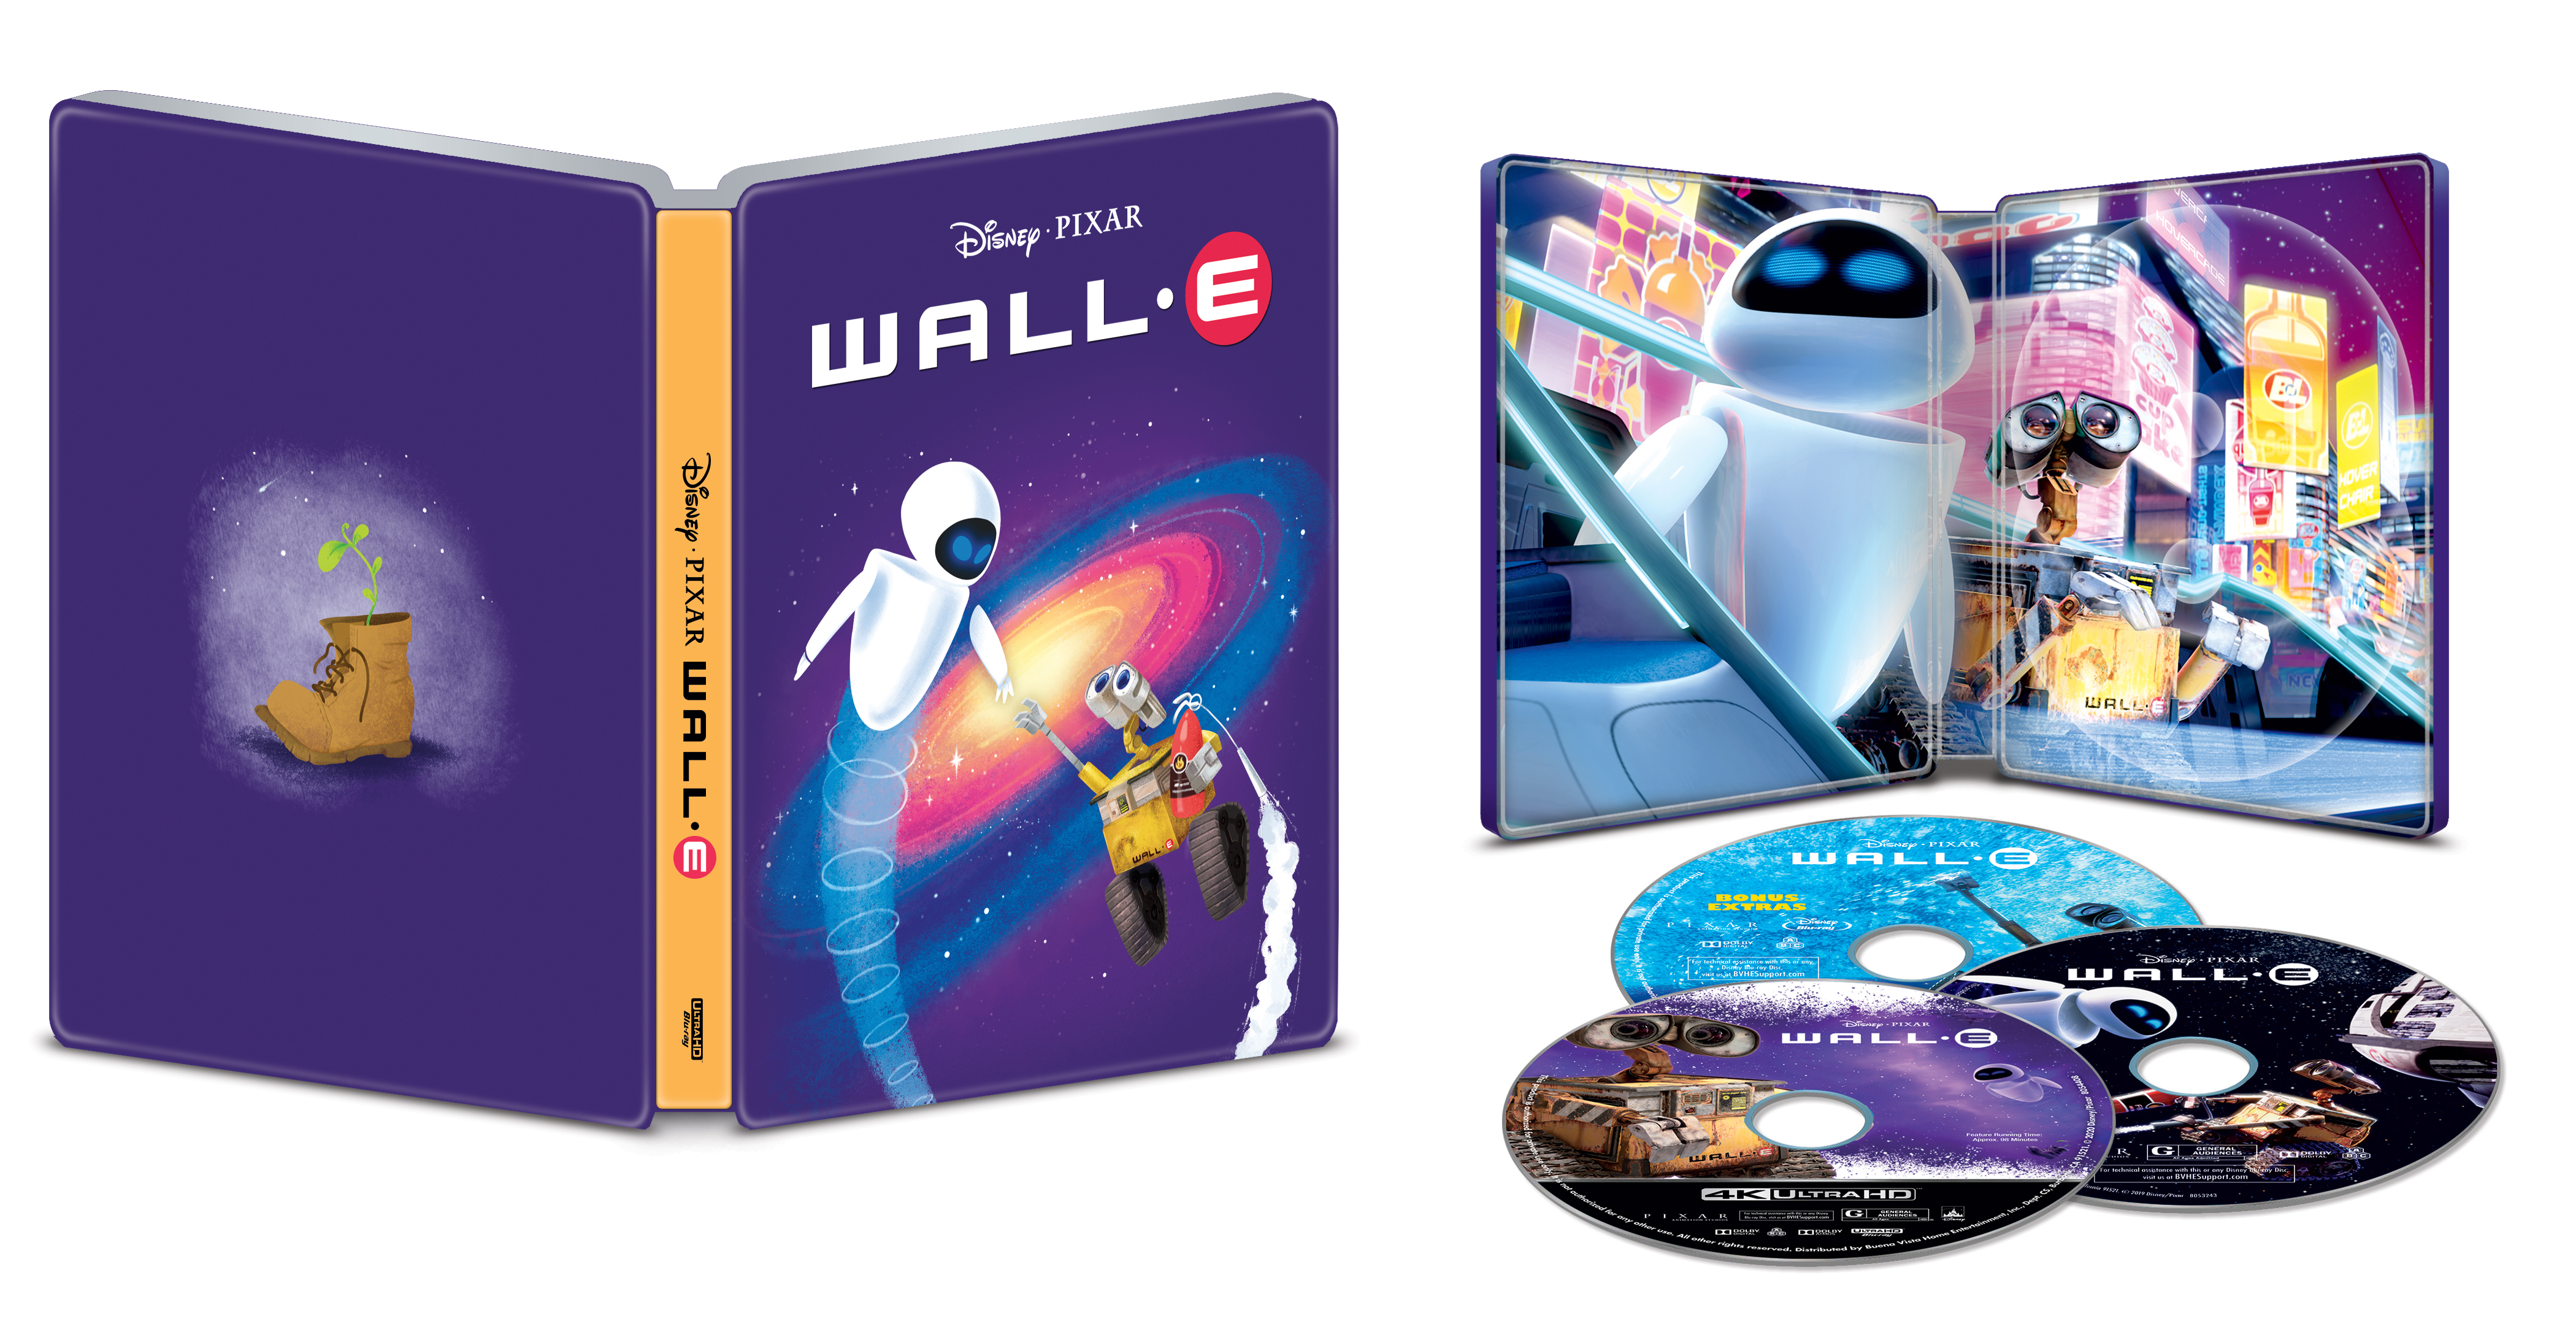 Wall E Steelbook Includes Digital Copy 4k Ultra Hd Blu Ray Blu Ray Only Best Buy 08 Best Buy